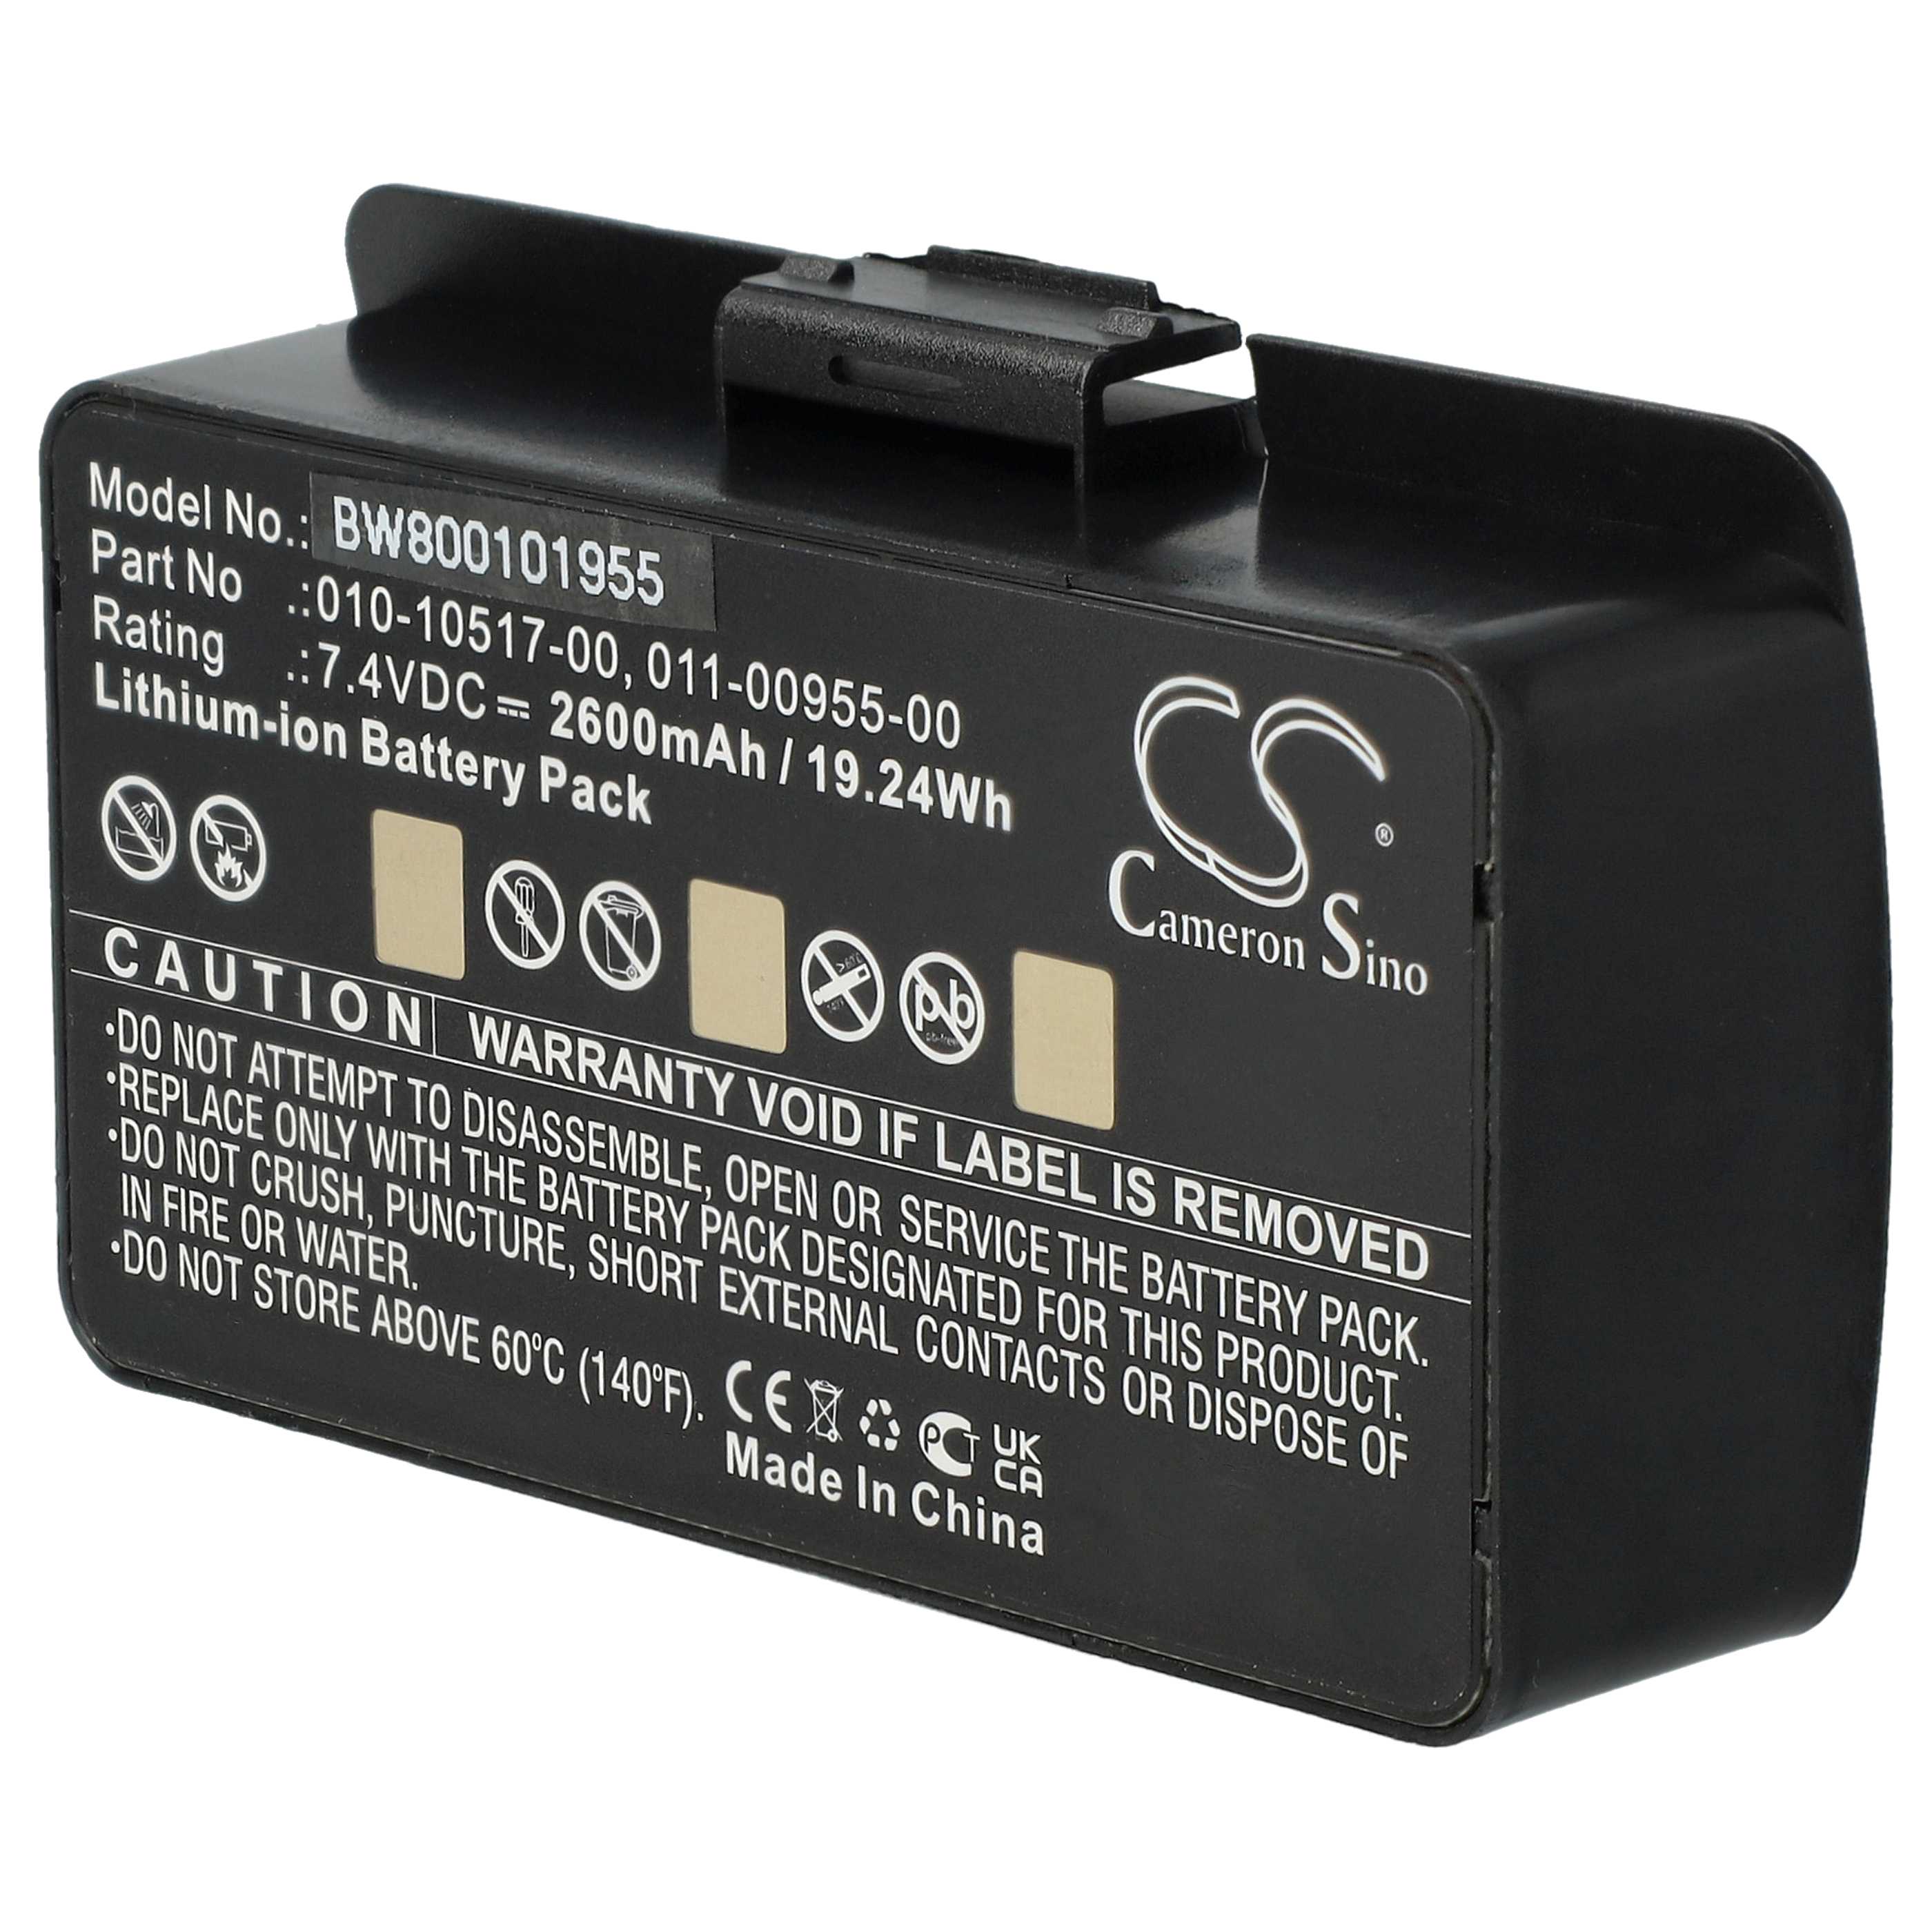 Batterie remplace Garmin 010-10517-00, 010-10517-01, 01070800001 pour navigation GPS - 2600mAh 8,4V Li-ion